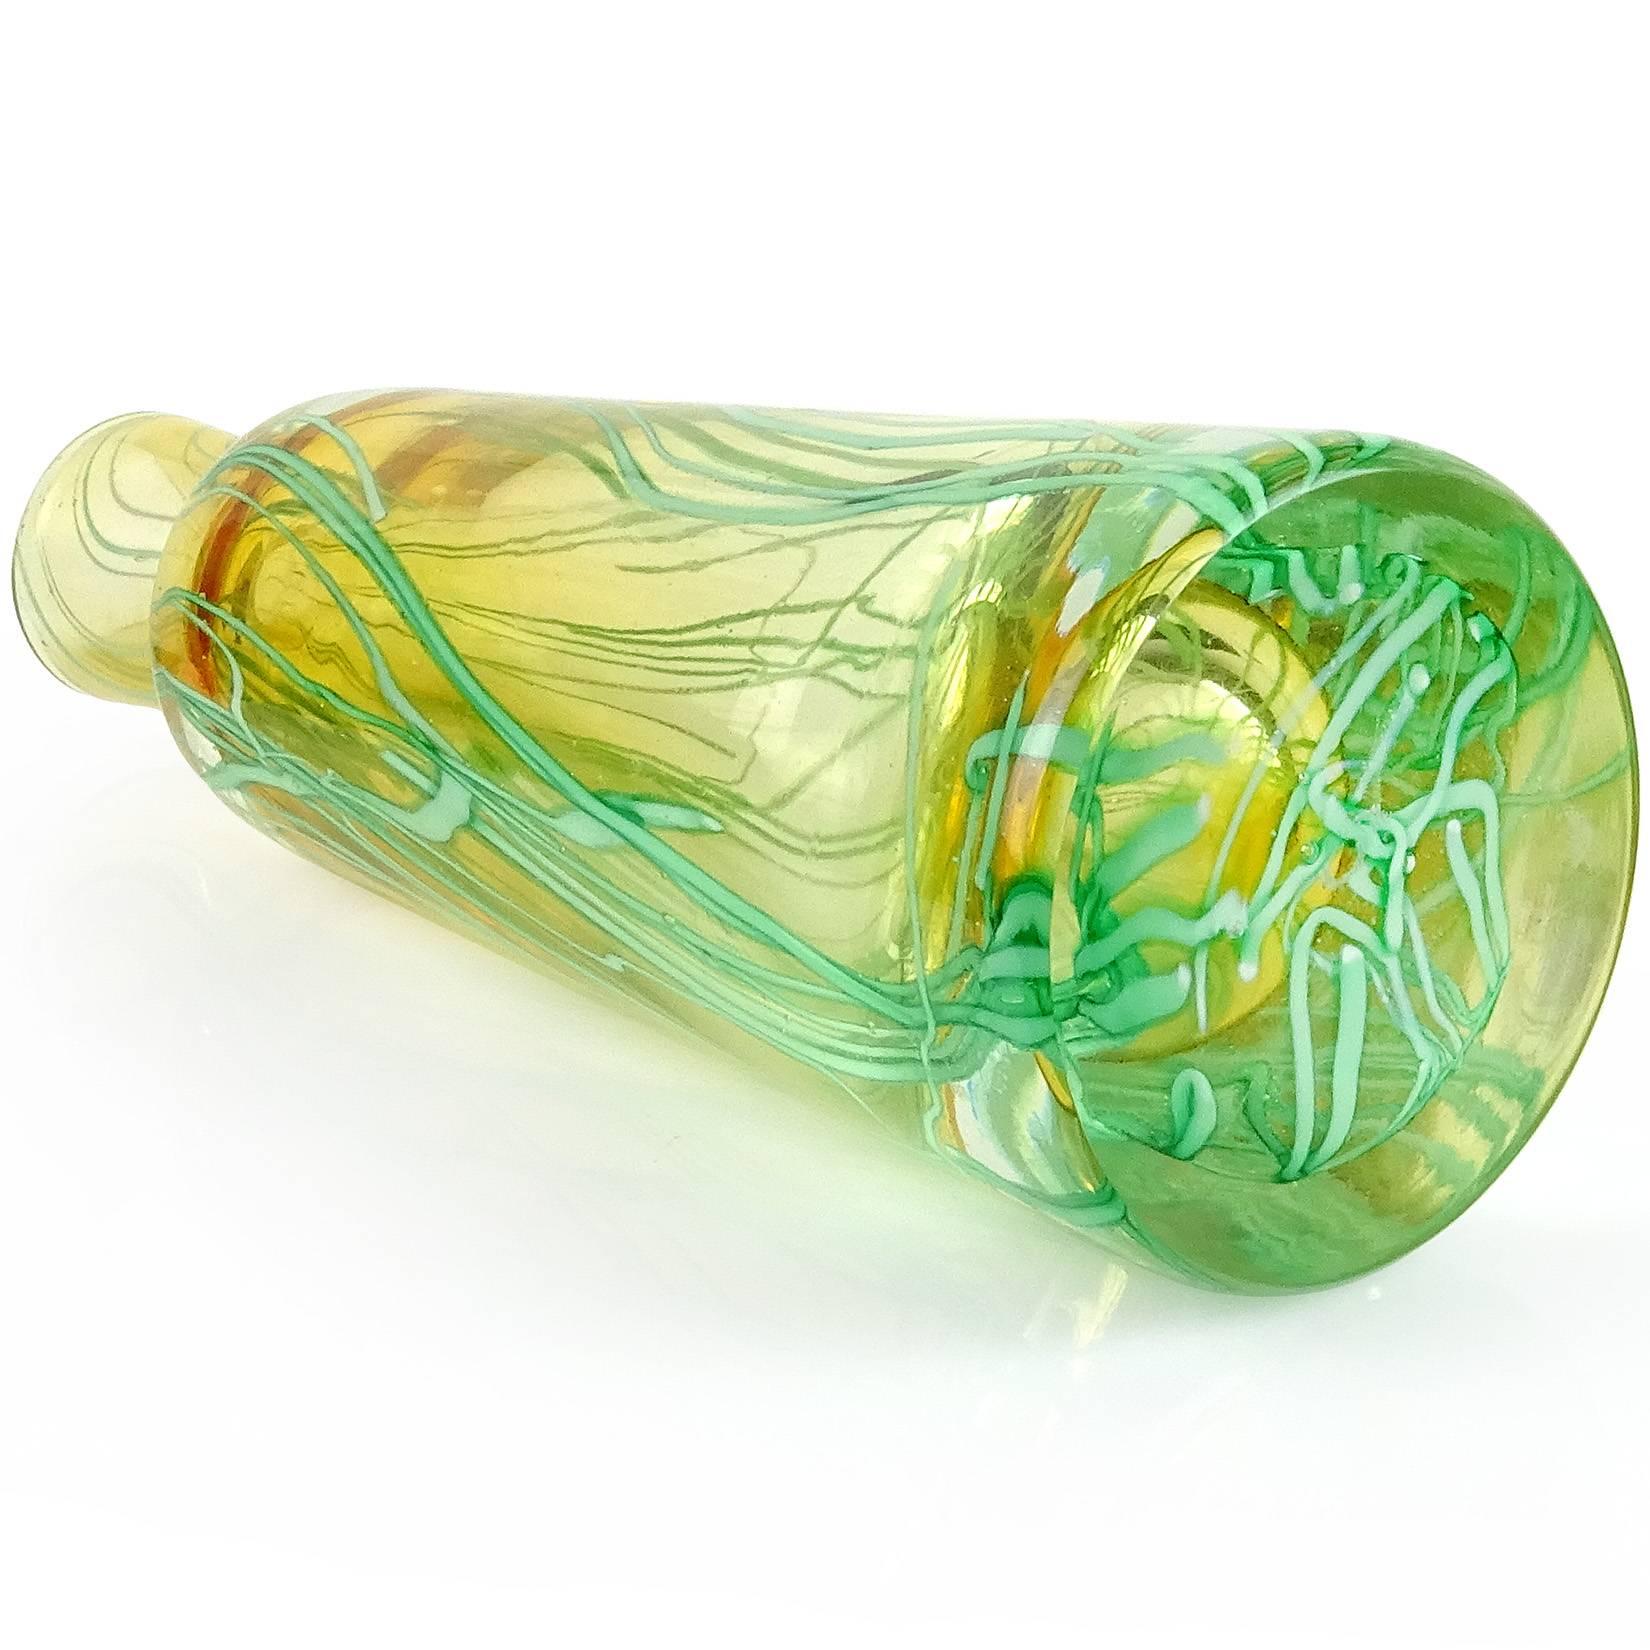 20th Century Murano Sommerso Green Ribbons Gold Stopper Italian Art Glass Perfume Bottle